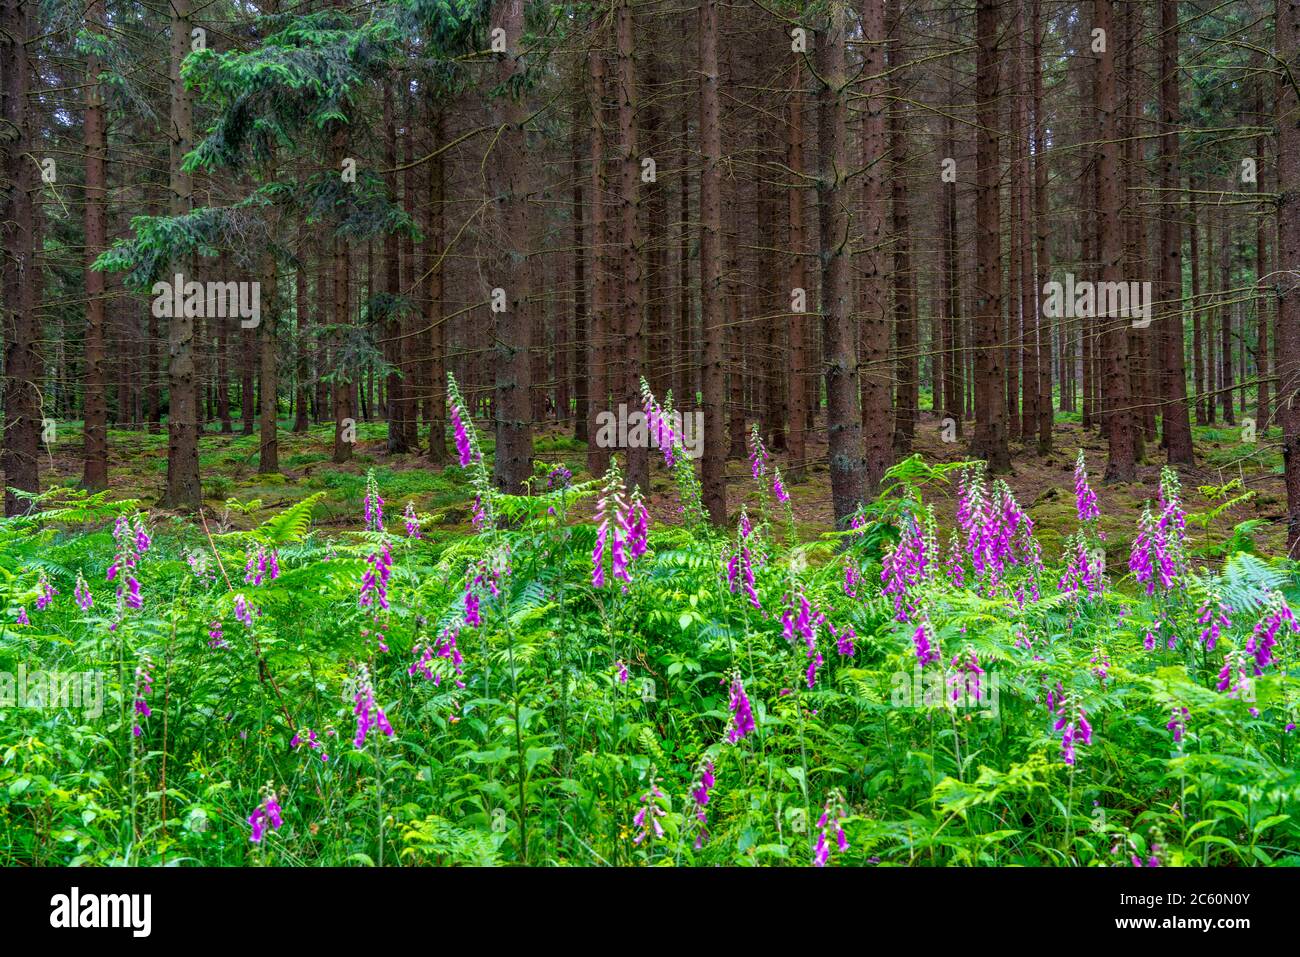 Struffelt Naturschutzgebiet, Wald bei Roetgen-Rott, Rotfuchshandschuhpflanze, giftig, Eifel, NRW, Deutschland Stockfoto